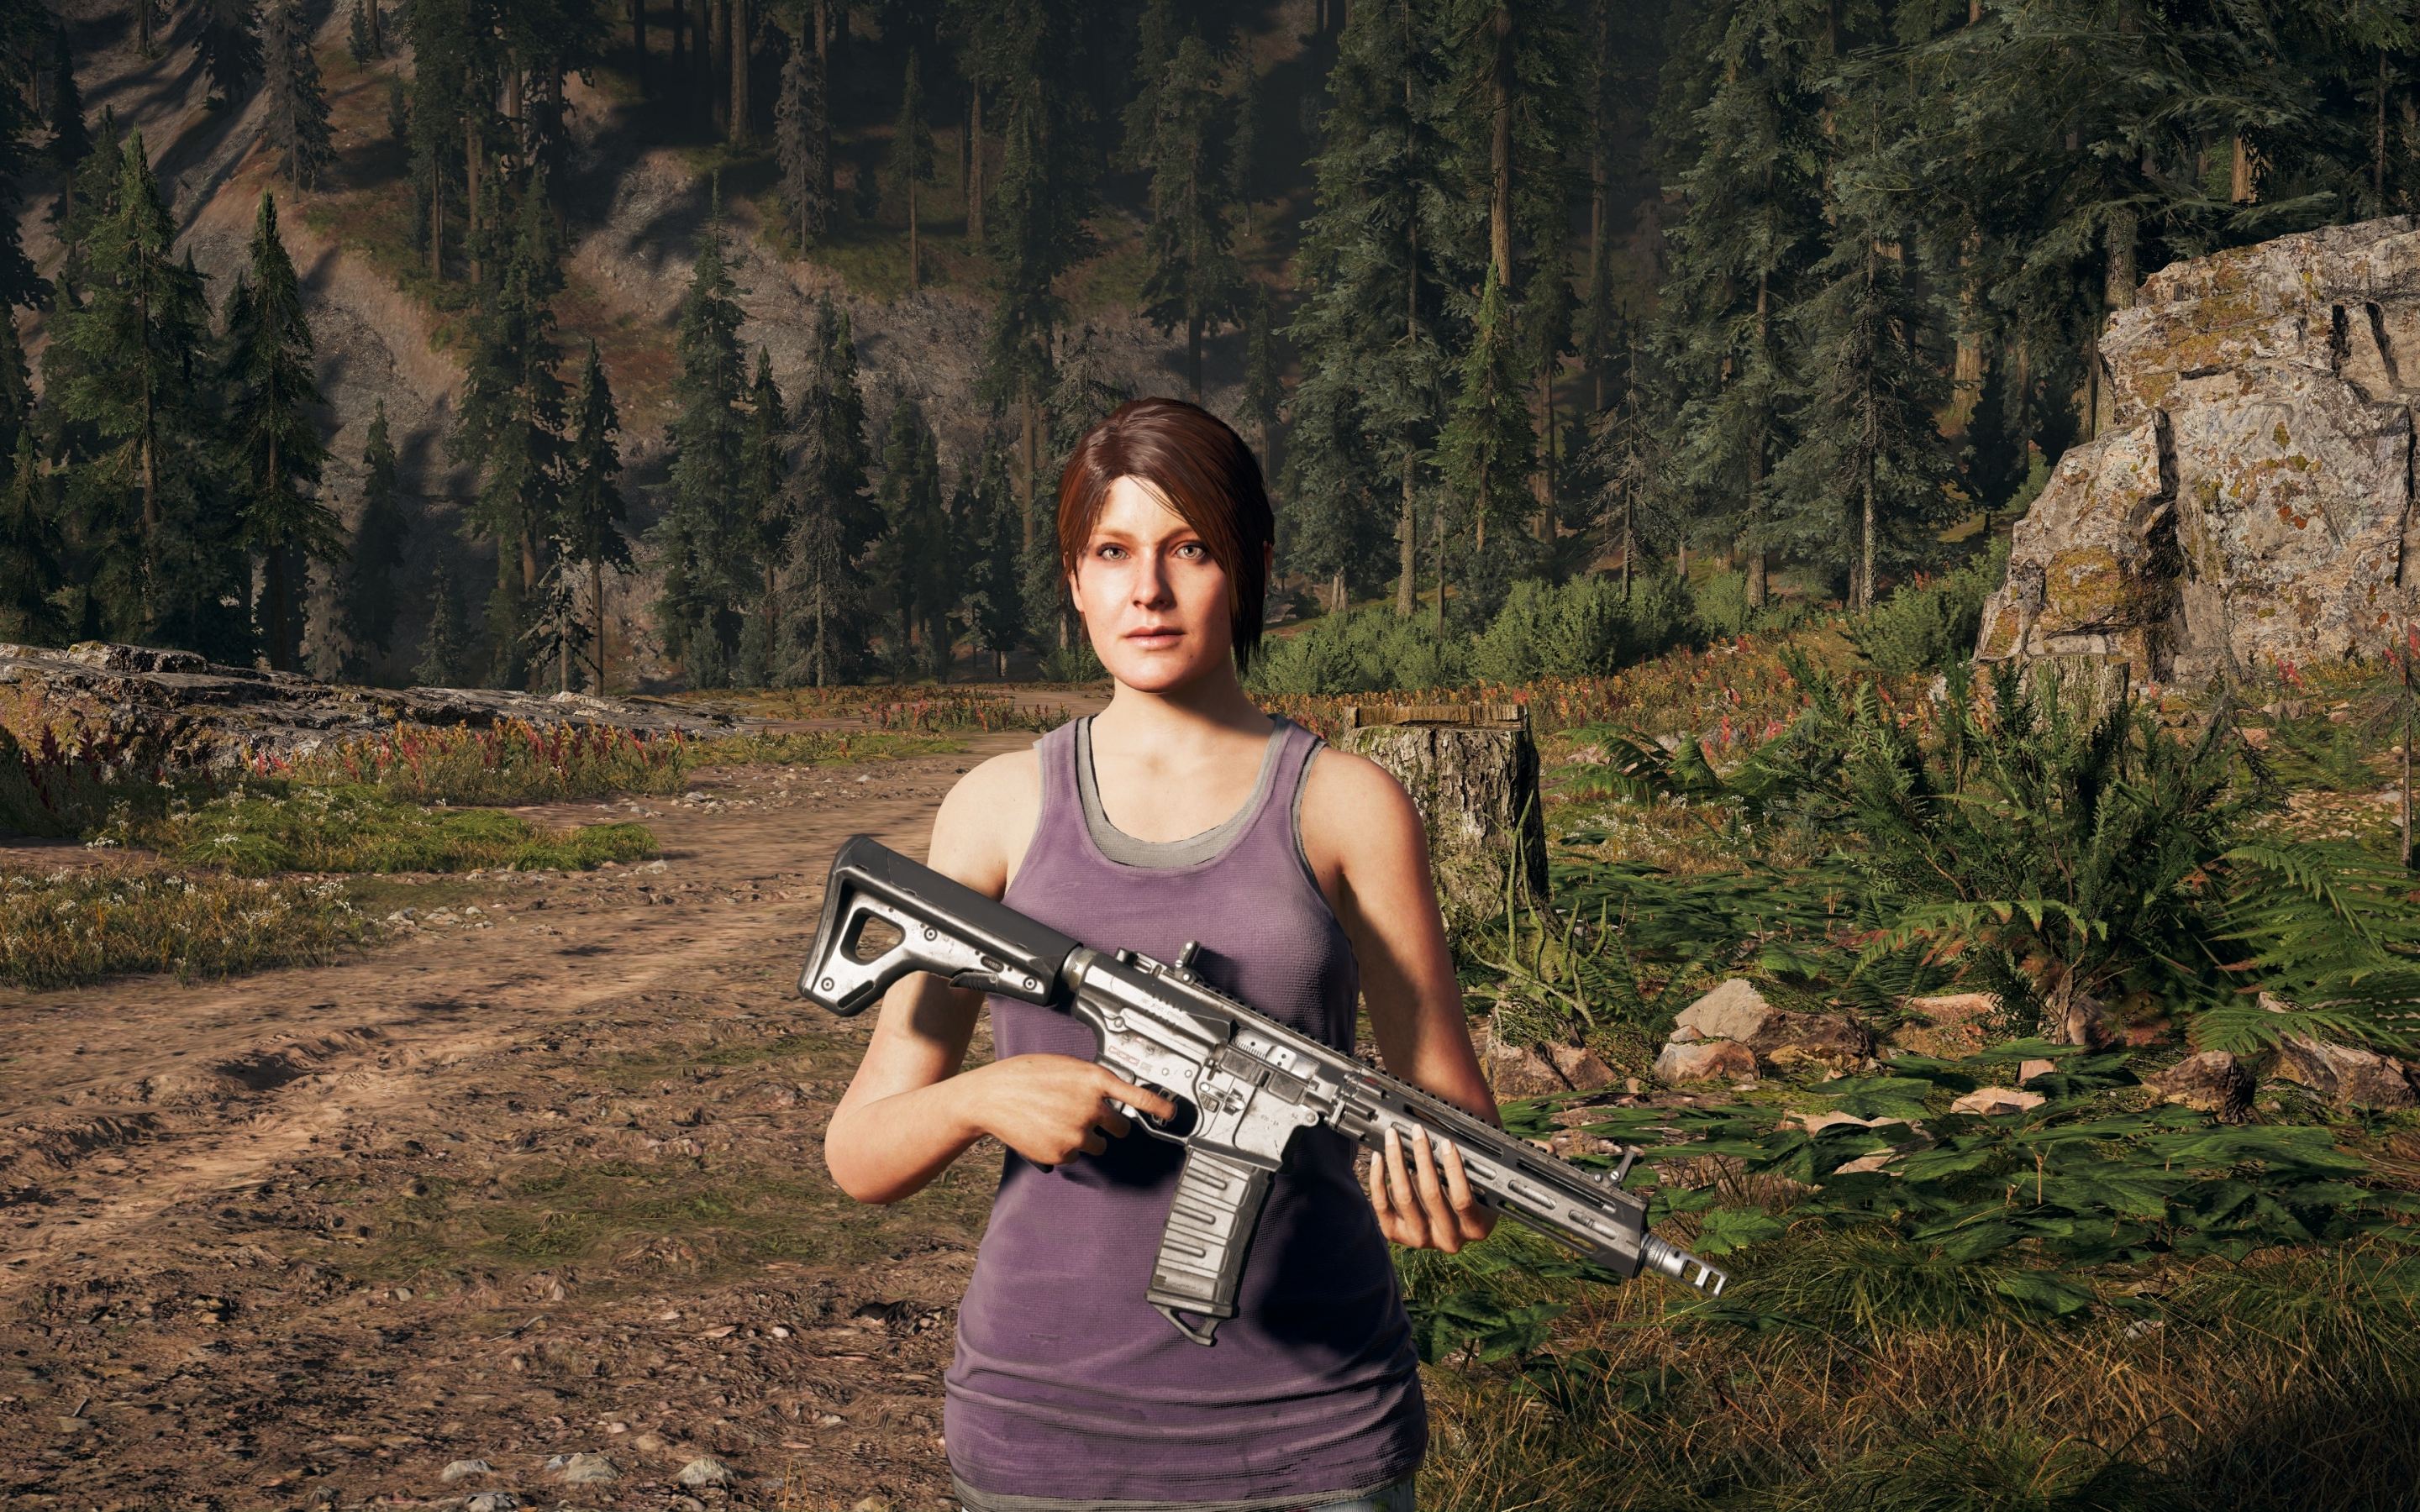 Far cry 5, woman with gun, outdoor, 2018, 2880x1800 wallpaper